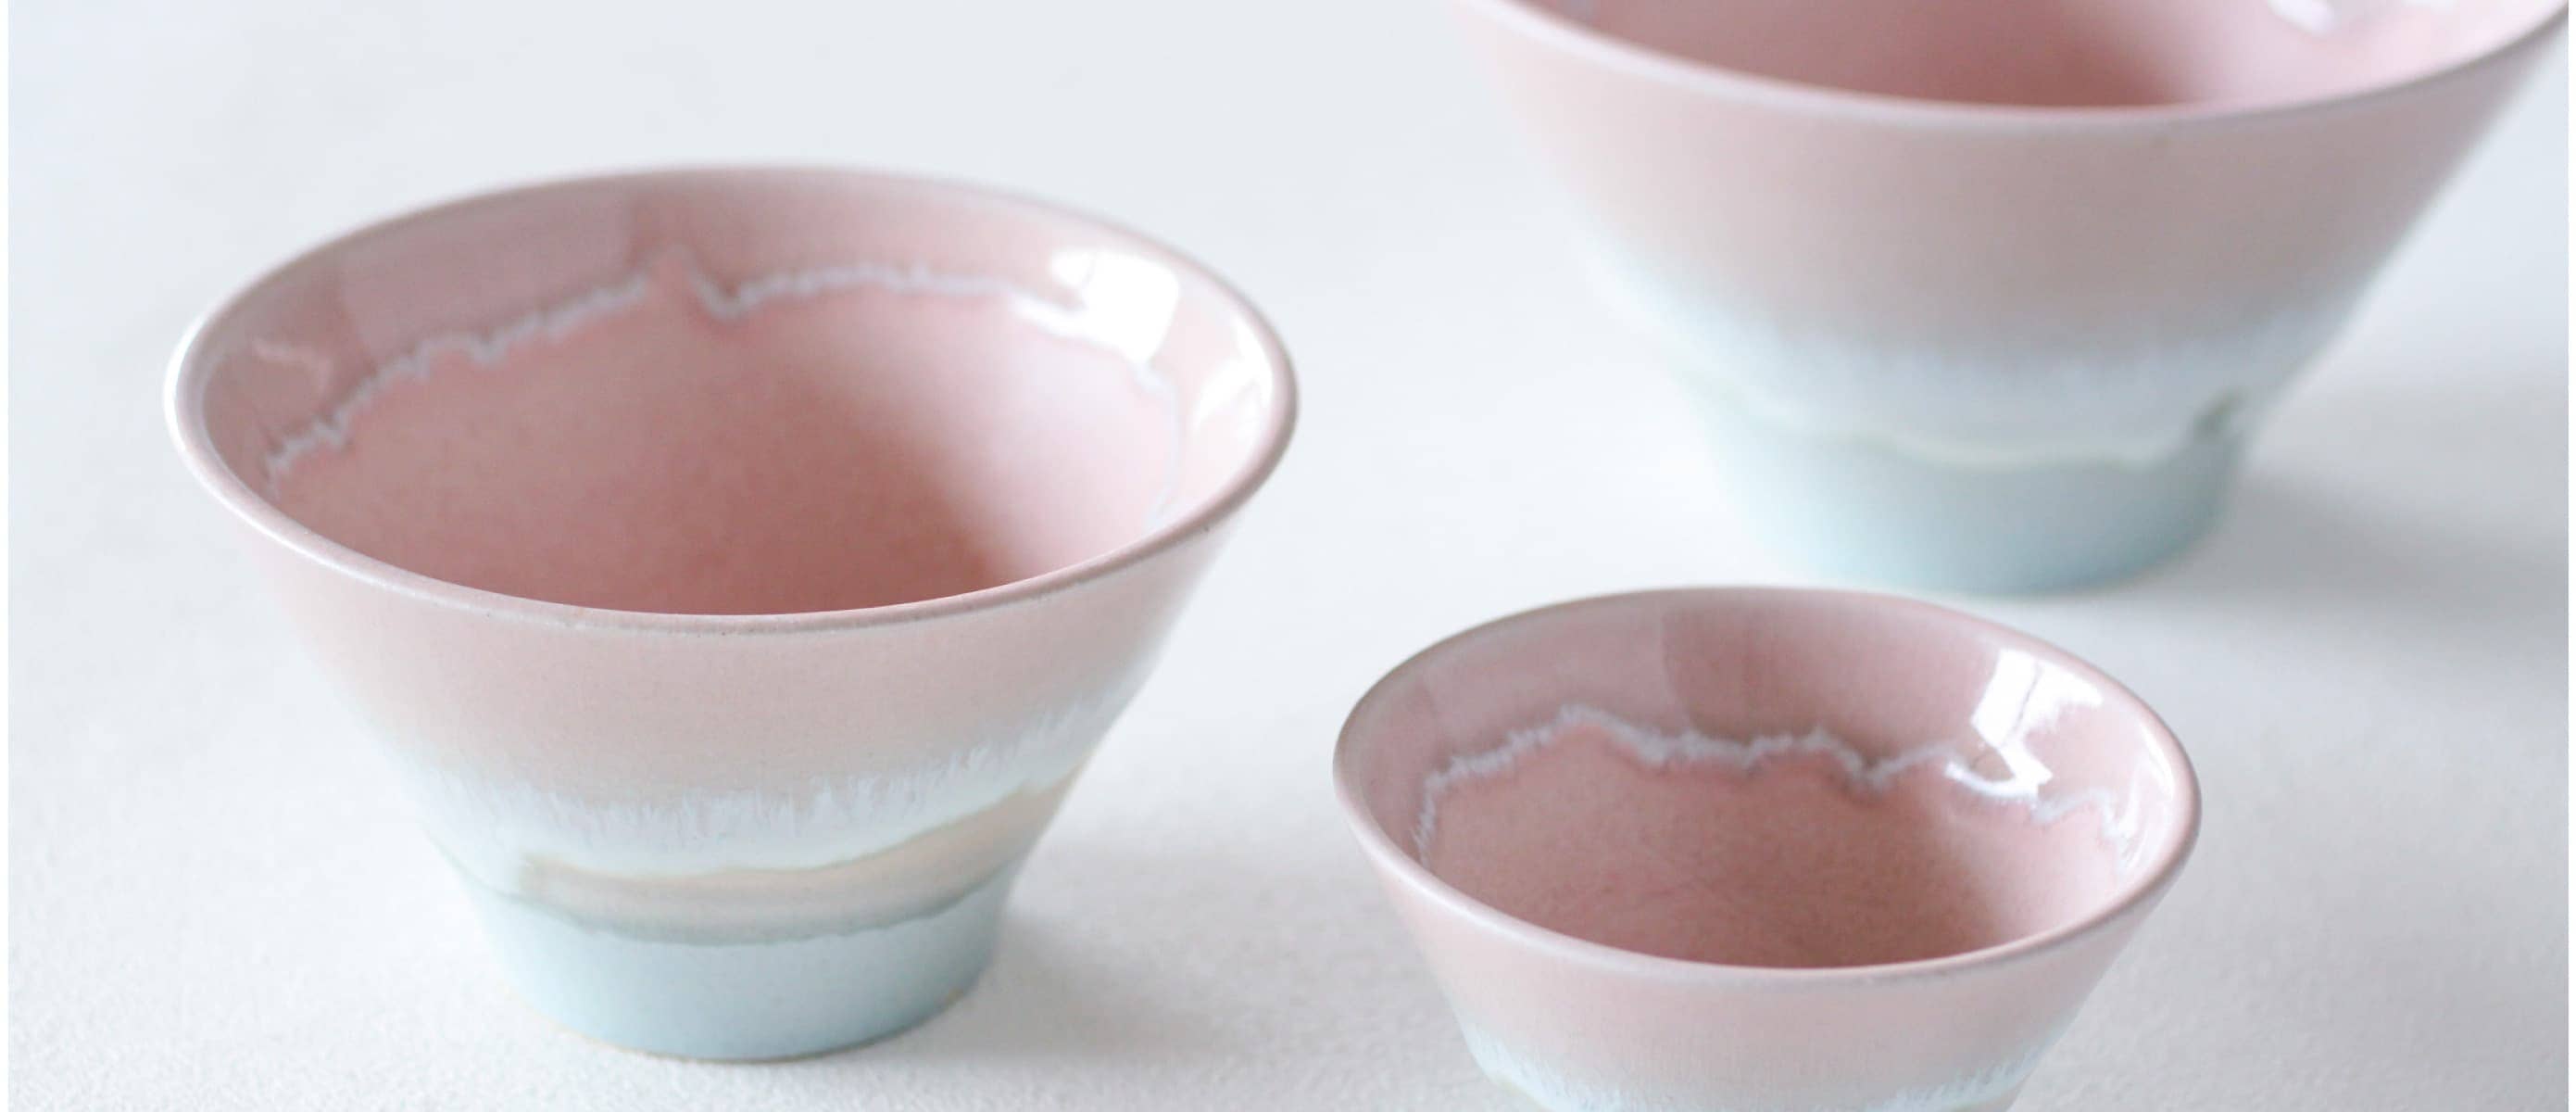 Shinkougama Kaneta Tanaka Pottery